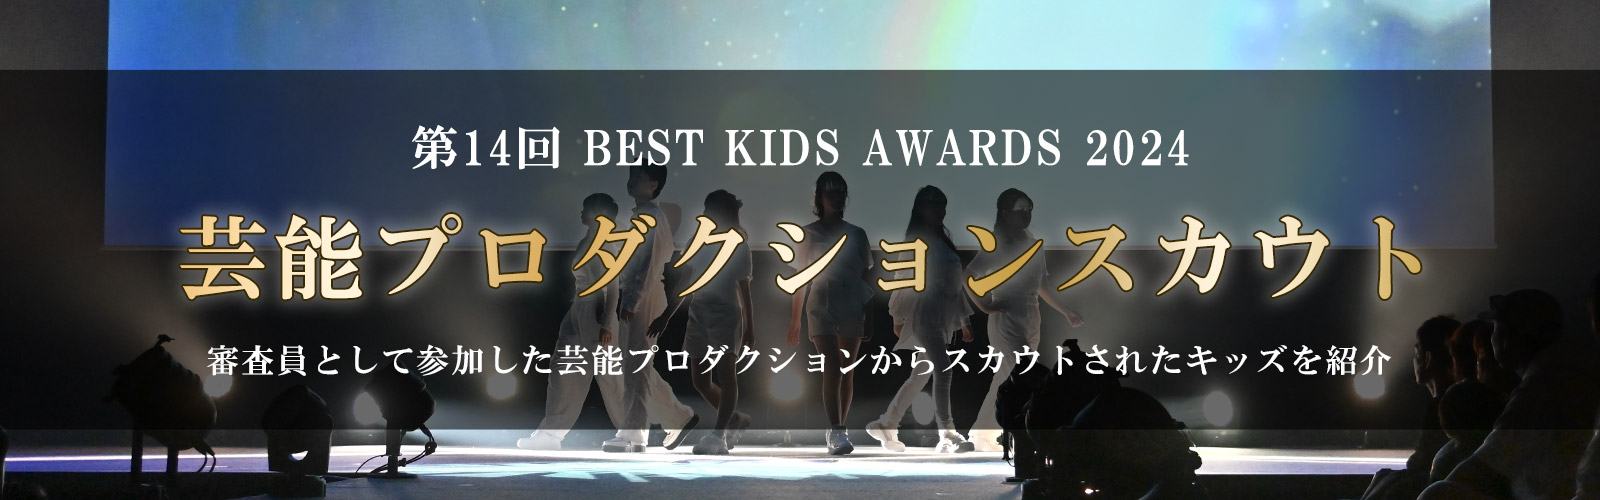 第14回BEST KIDS AUDITION 2024芸能プロダクションスカウト